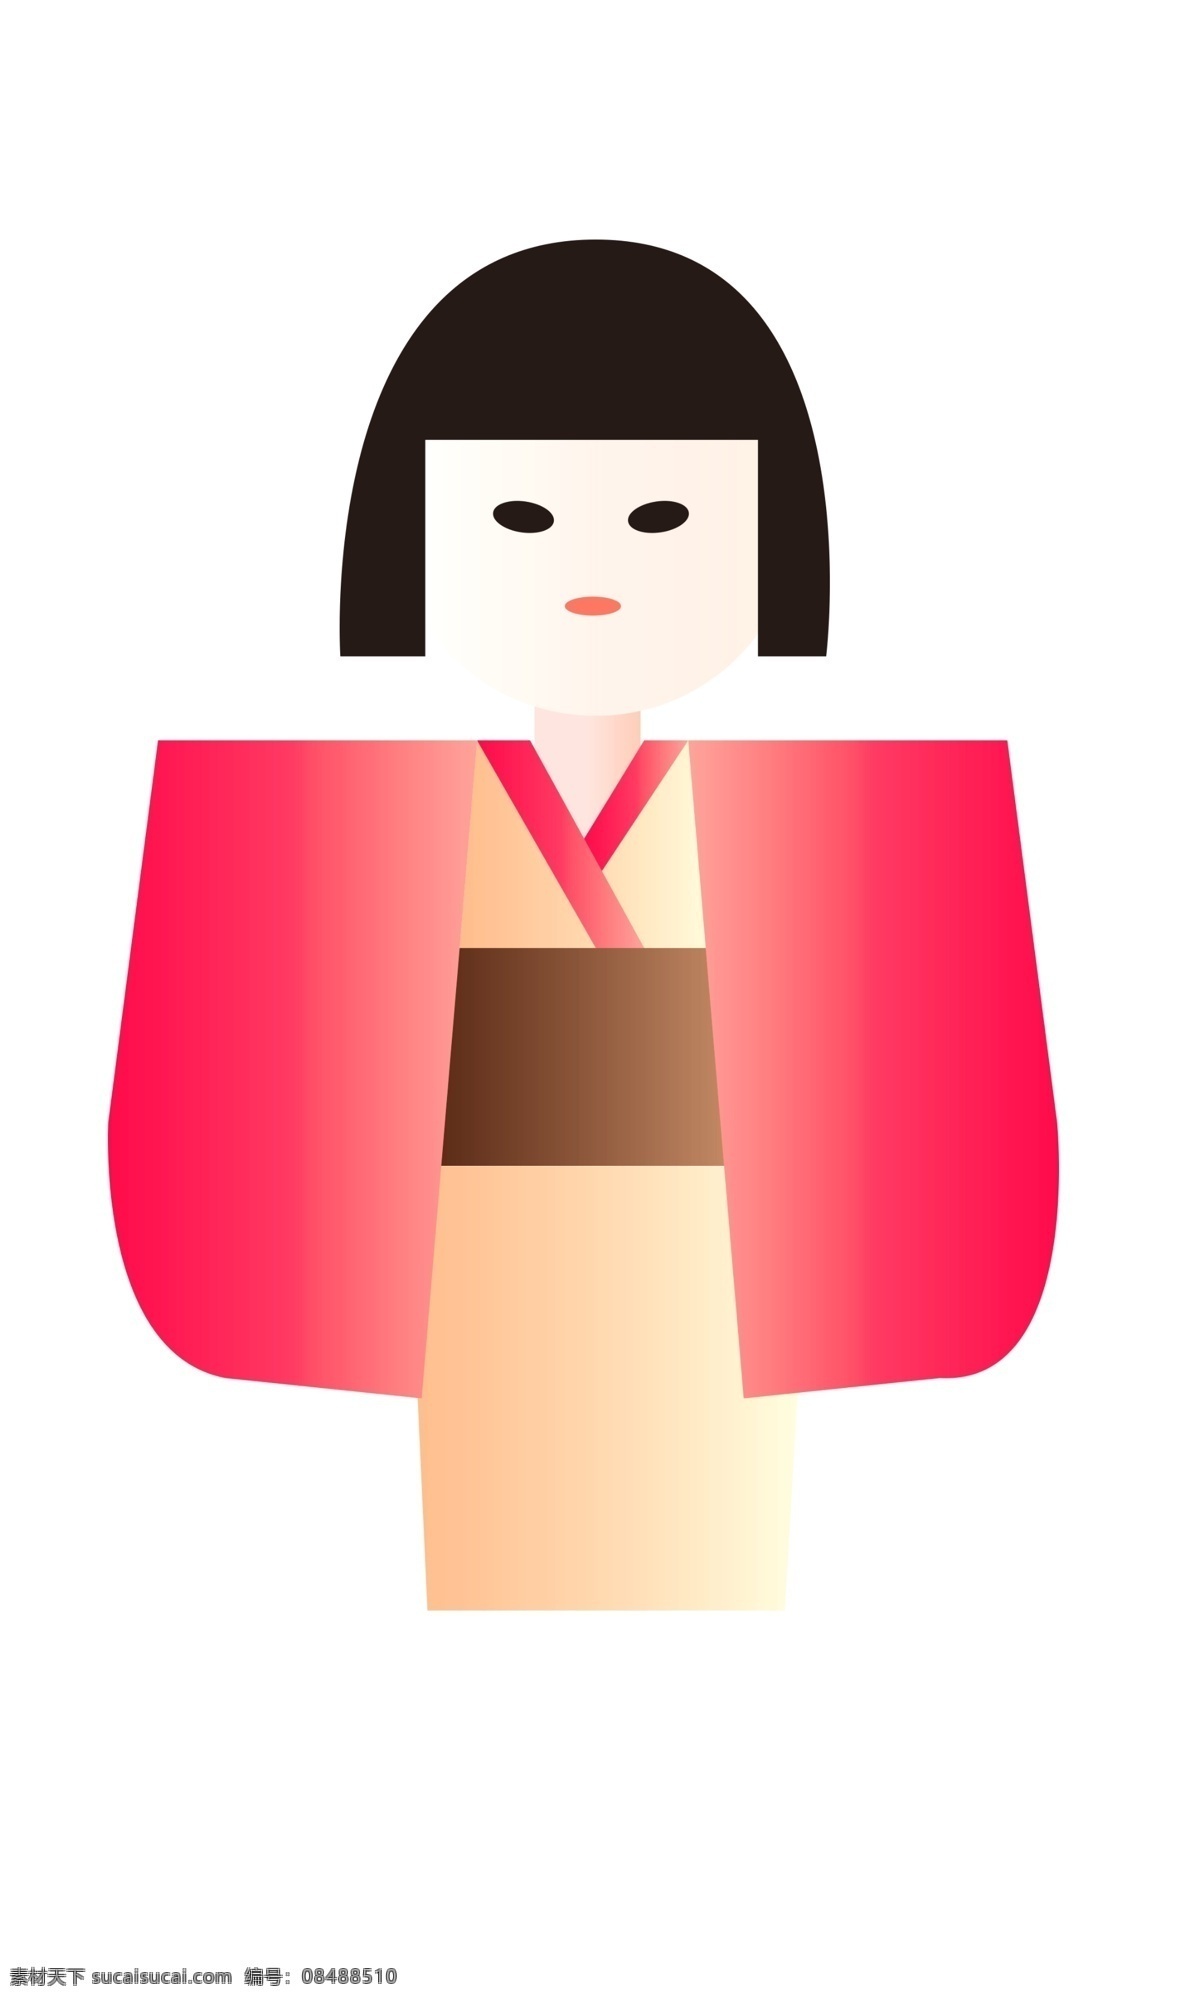 穿 和服 日本 女孩 漂亮女孩 穿和服的女孩 日本女孩 红色衣服 女孩插图 红色衣服女孩